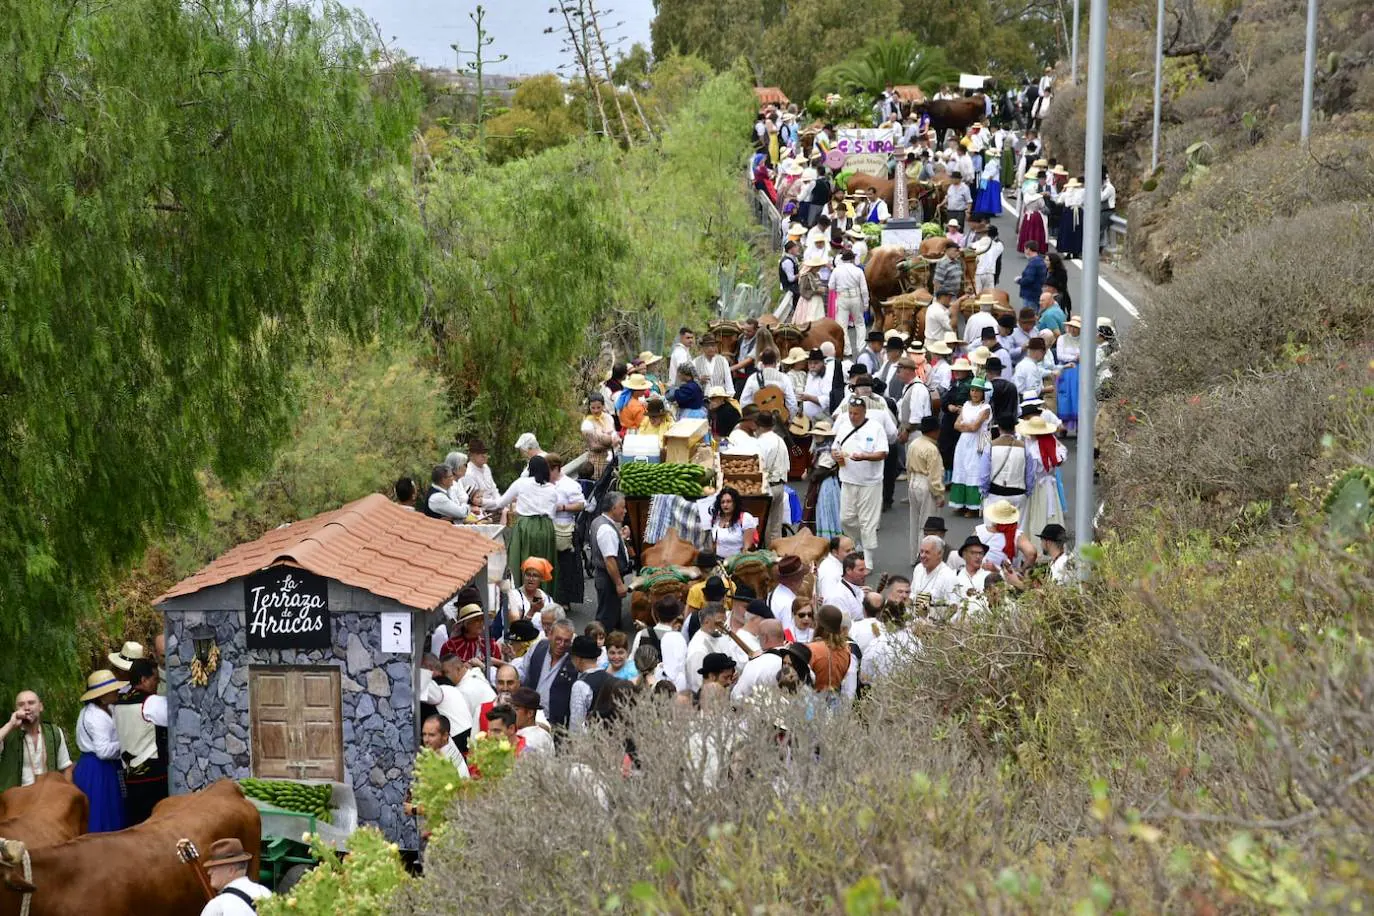 Fotos: Las imágenes de la romería de San Juan en Arucas